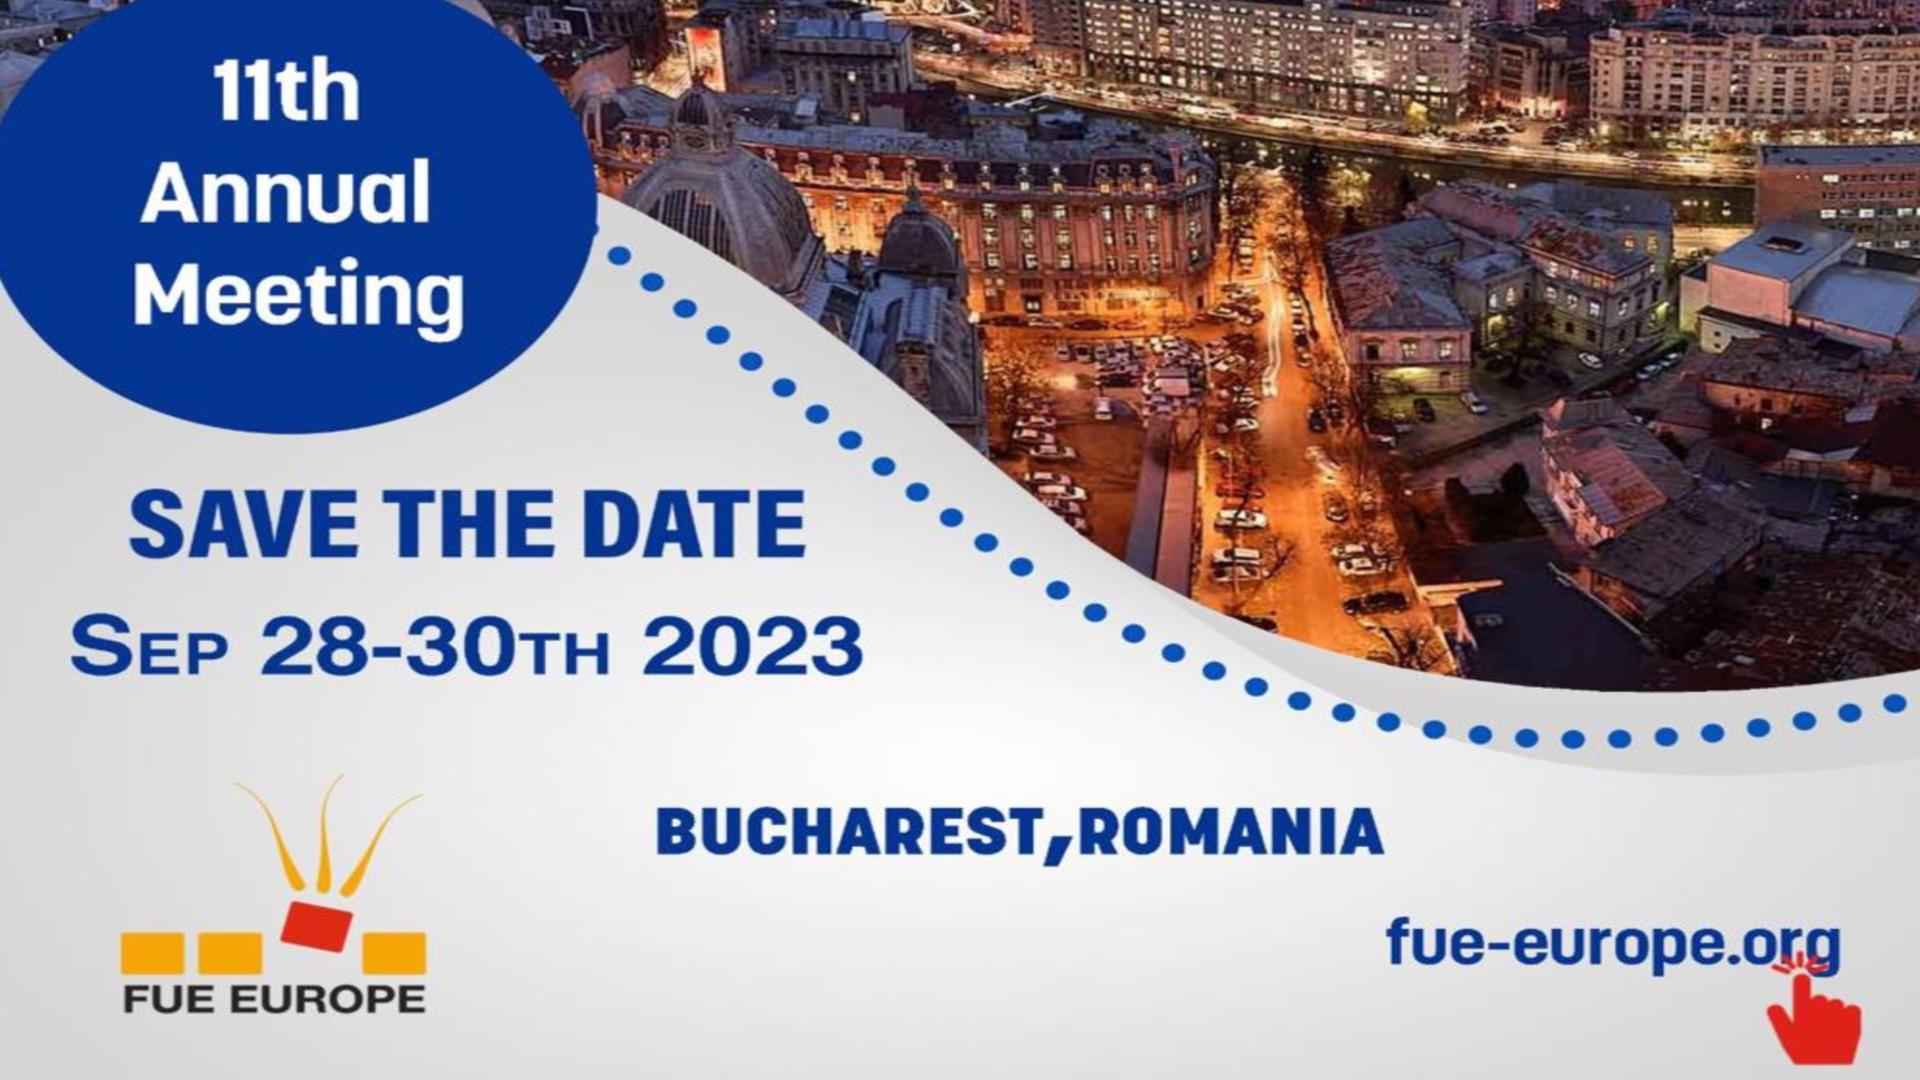 FUE EUROPE, eveniment de excepție organizat la București. Cele mai noi tehnici de implant de păr – sesiuni LIVE și workshop-uri organizate de experți